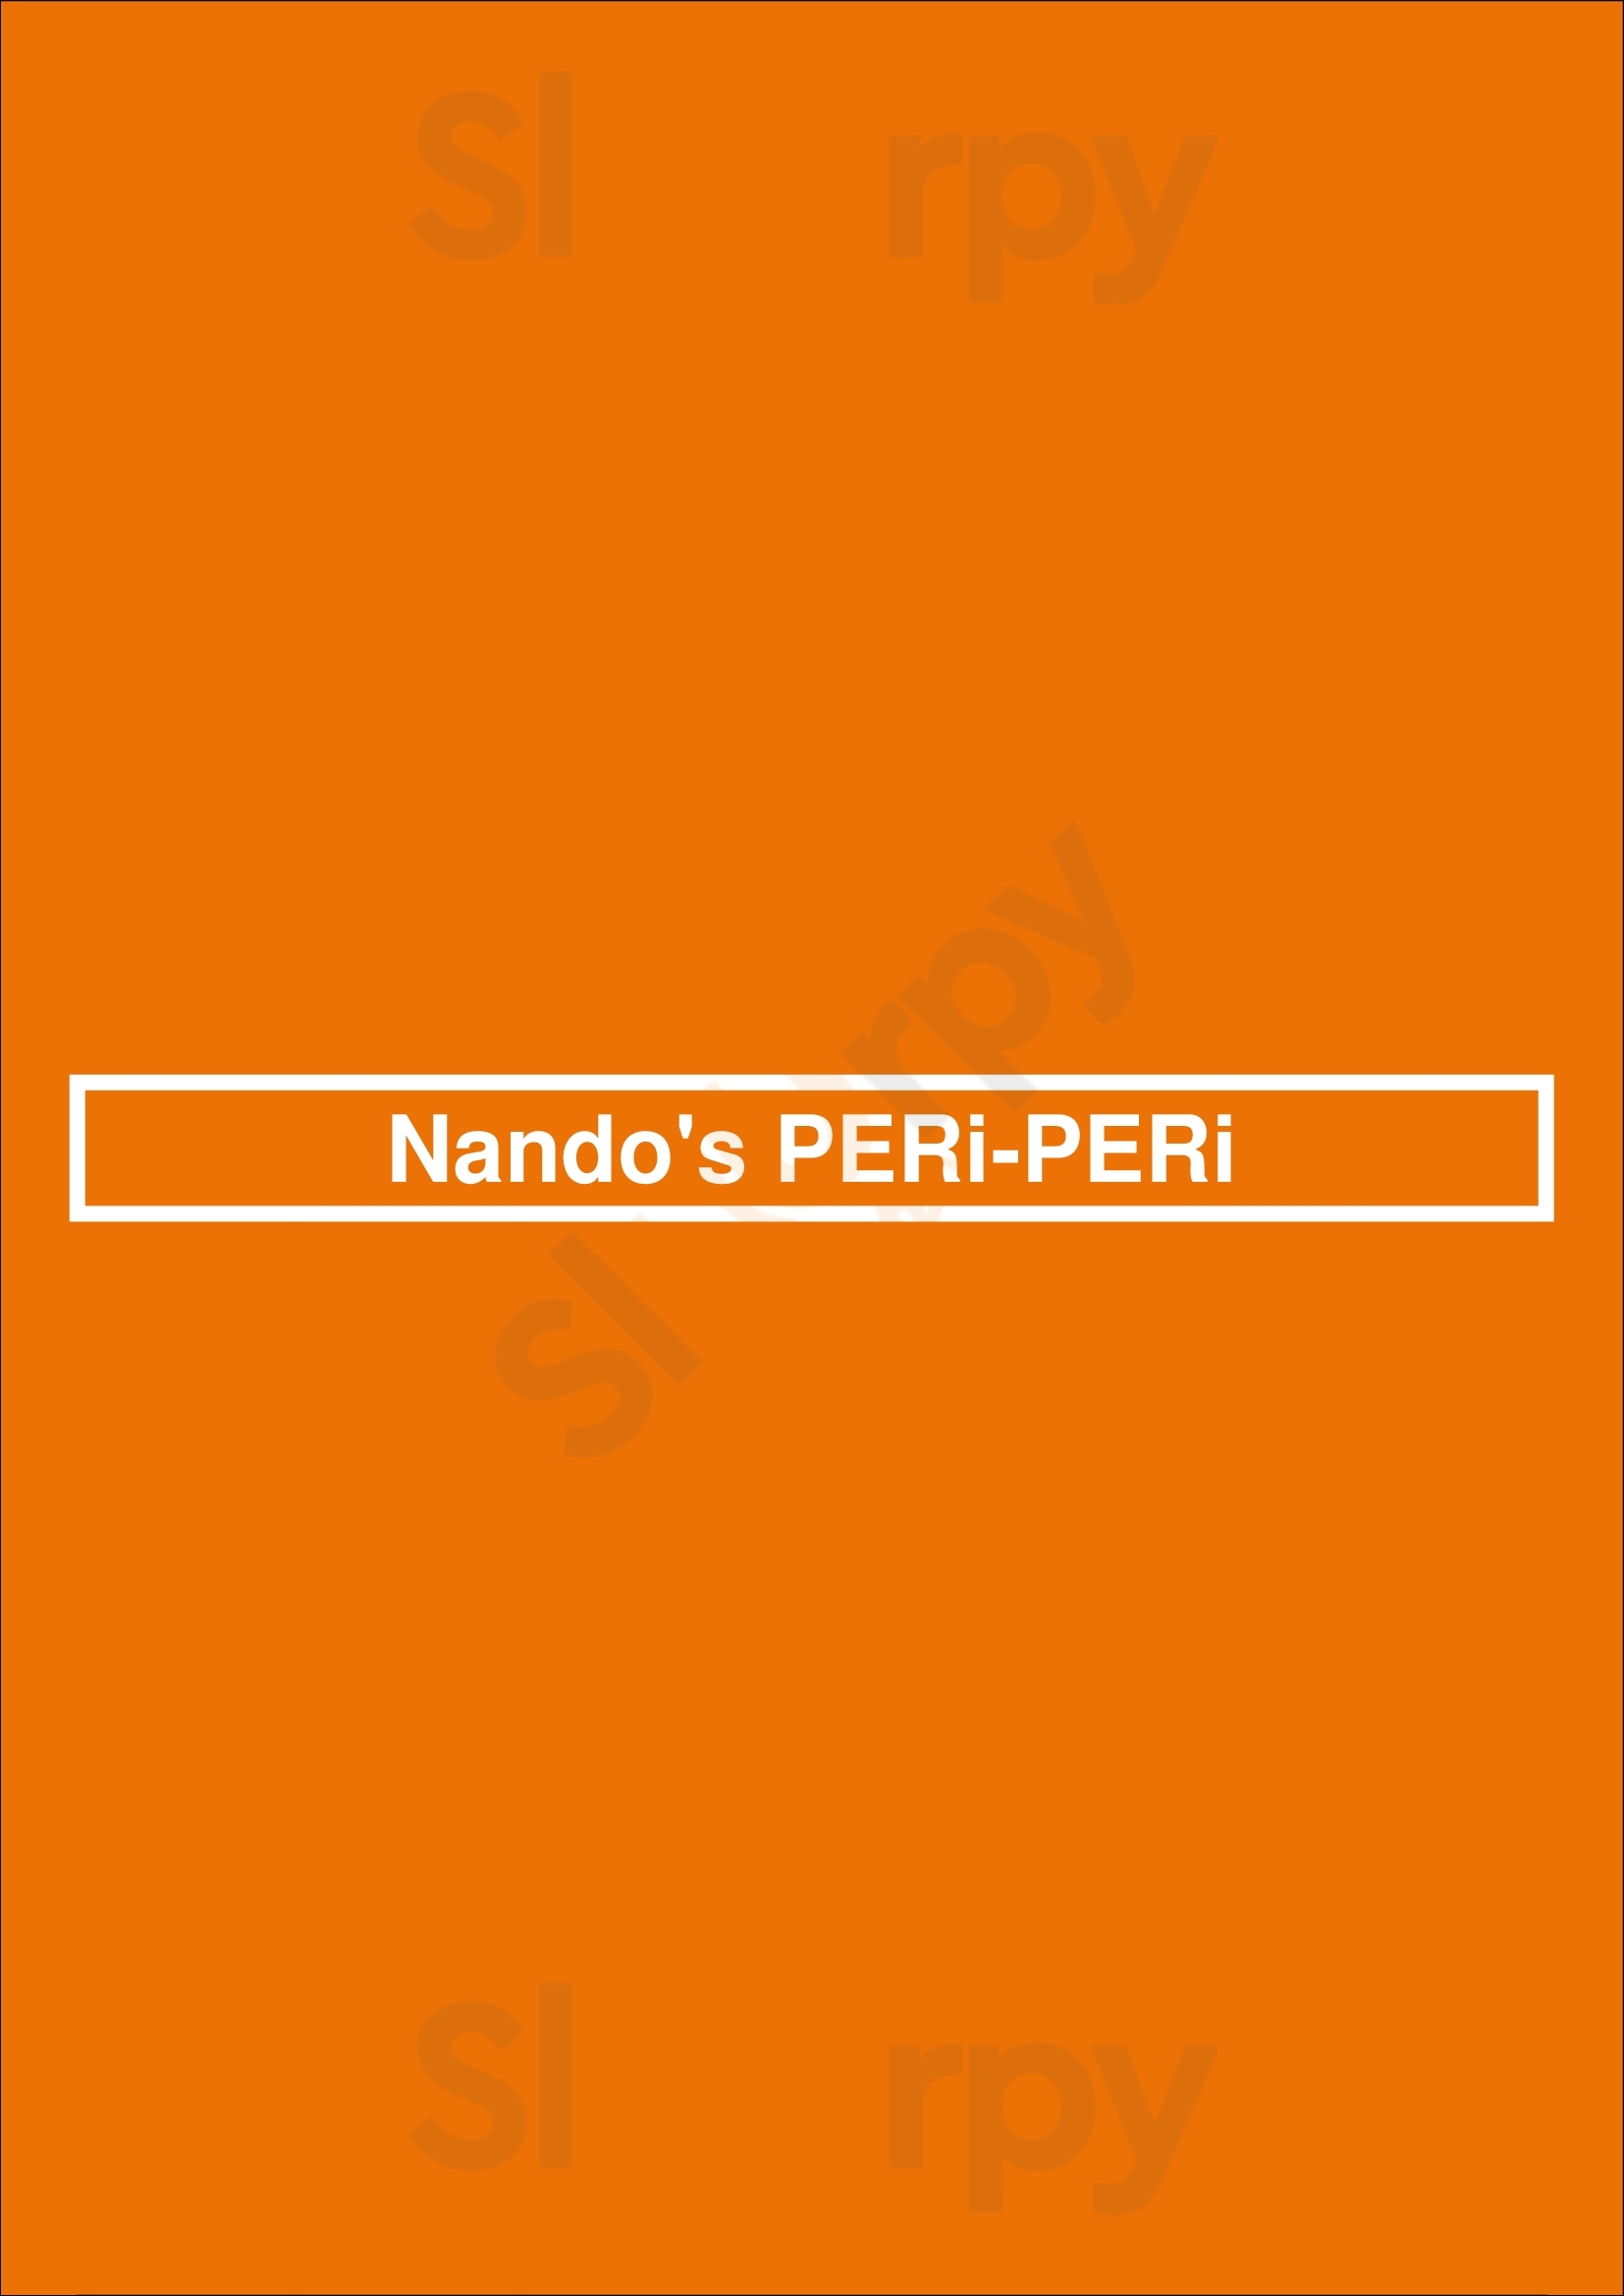 Nando's Peri-peri Washington DC Menu - 1